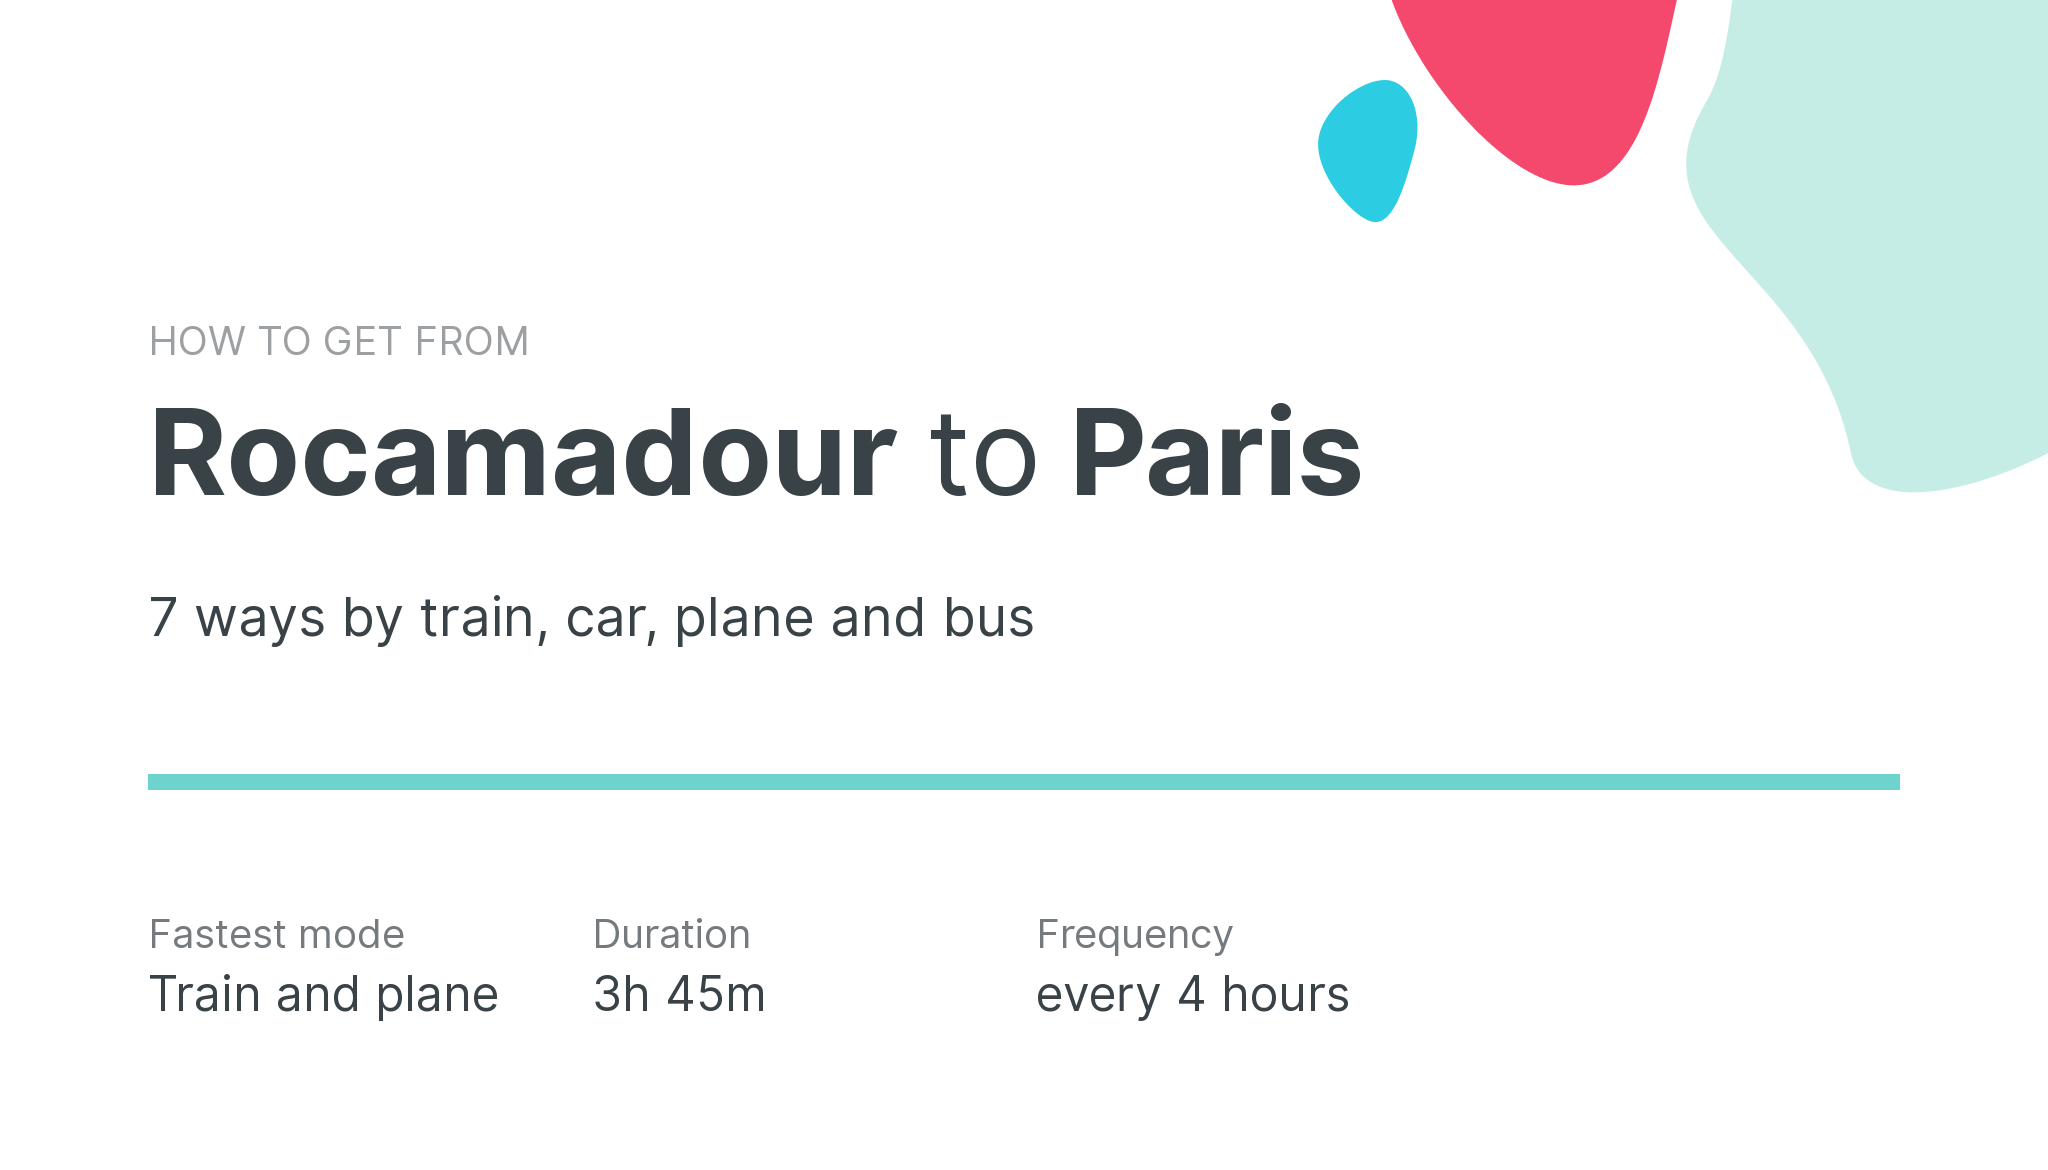 How do I get from Rocamadour to Paris